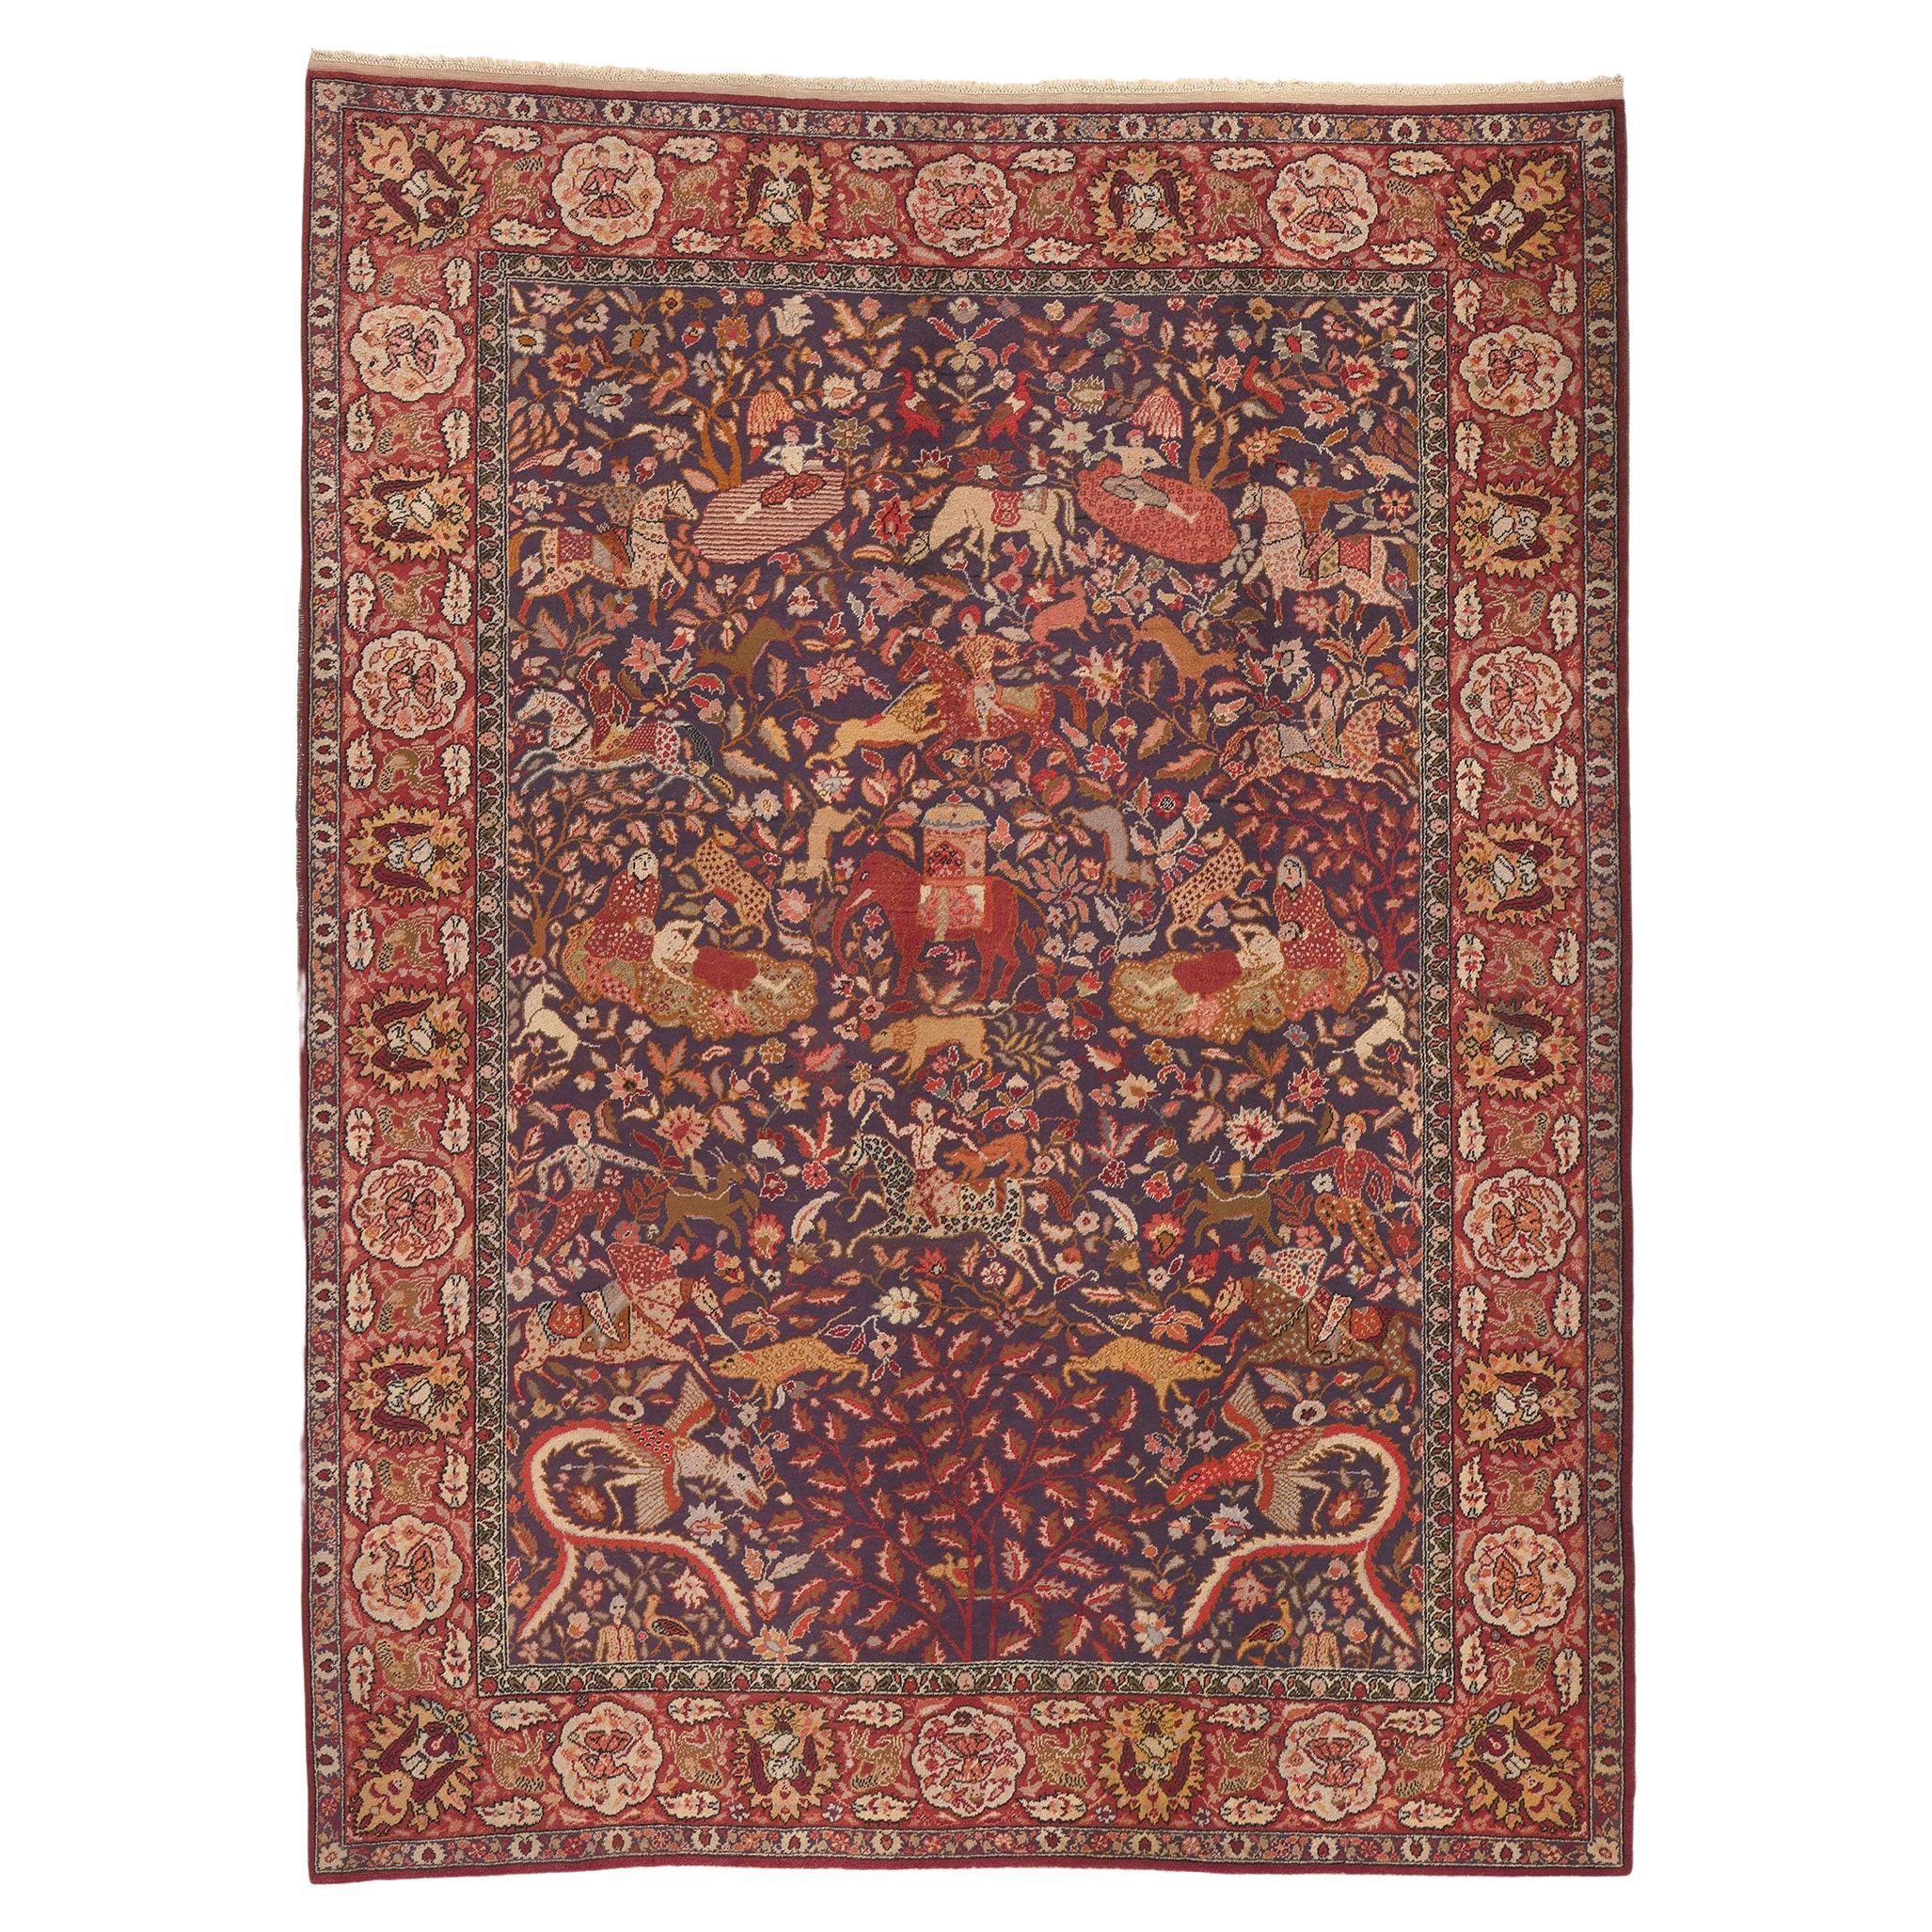 Antiker indischer Teppich mit königlicher Jagdszene aus Agra 